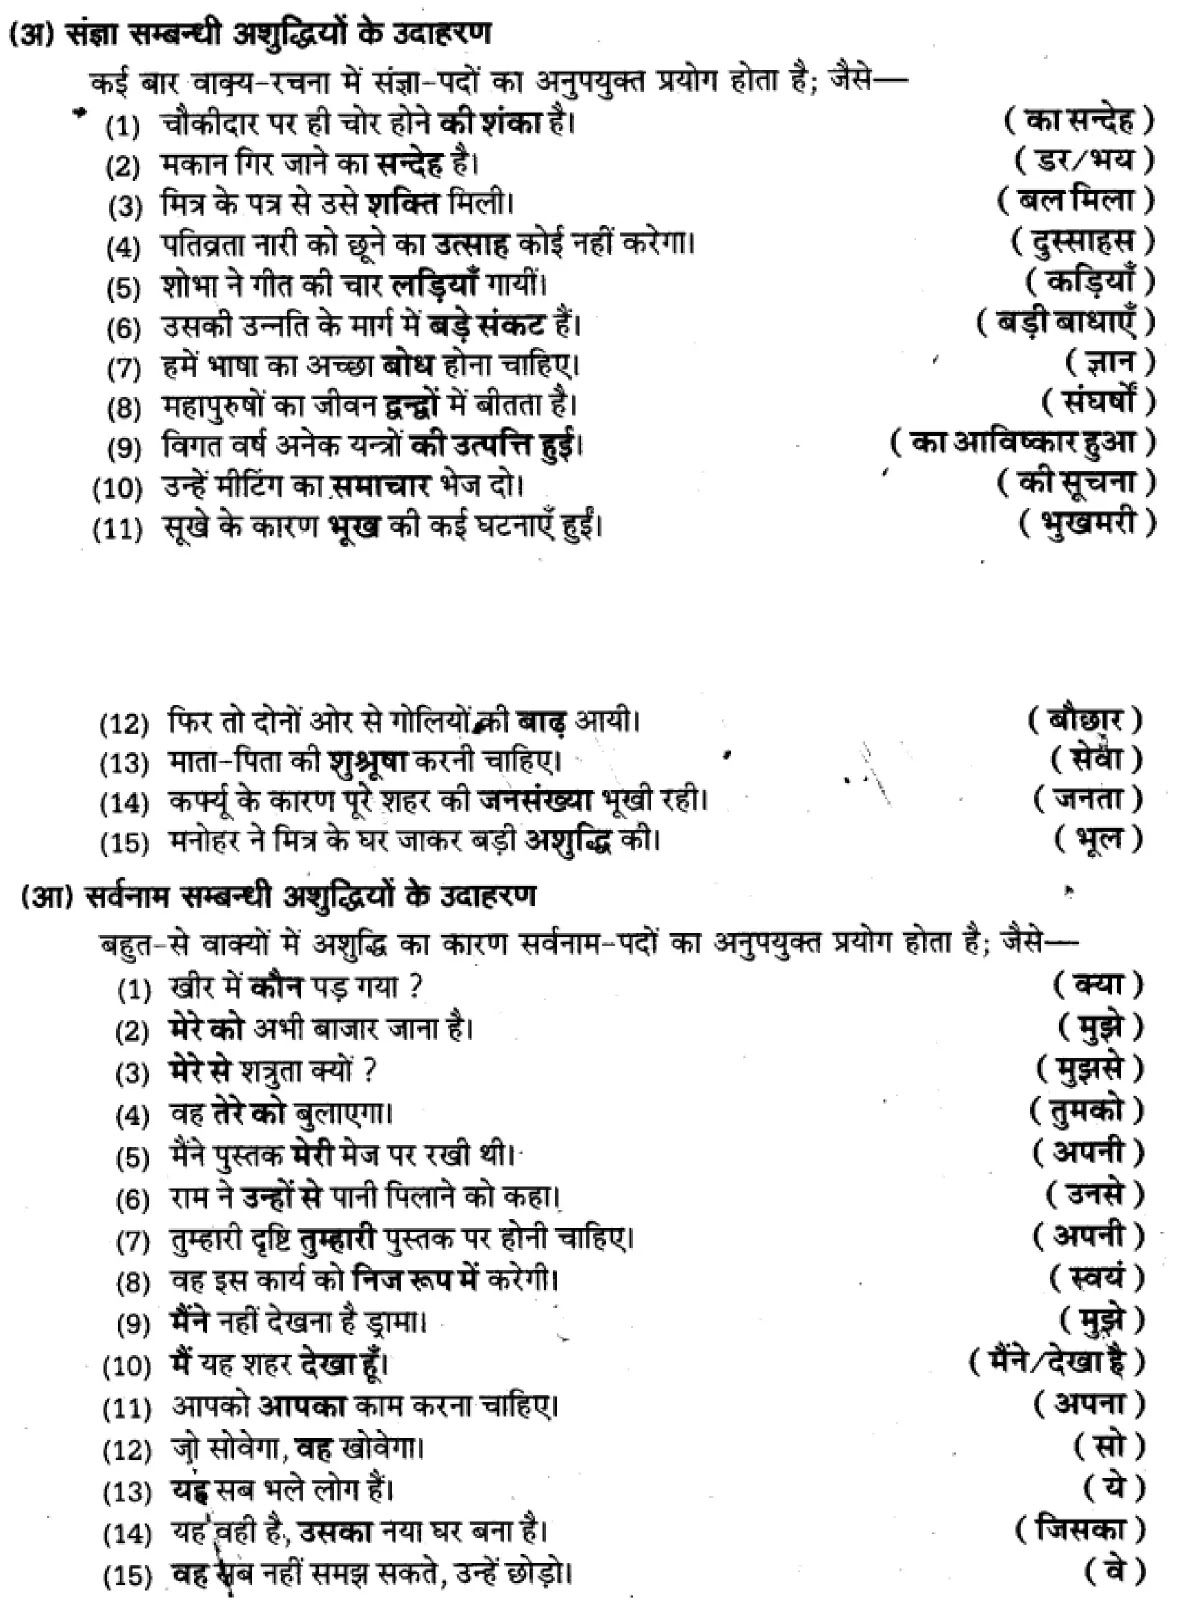 यूपी बोर्ड एनसीईआरटी समाधान "कक्षा 11 सामान्य  हिंदी" वाक्यों में त्रुटि-मार्जन  हिंदी में